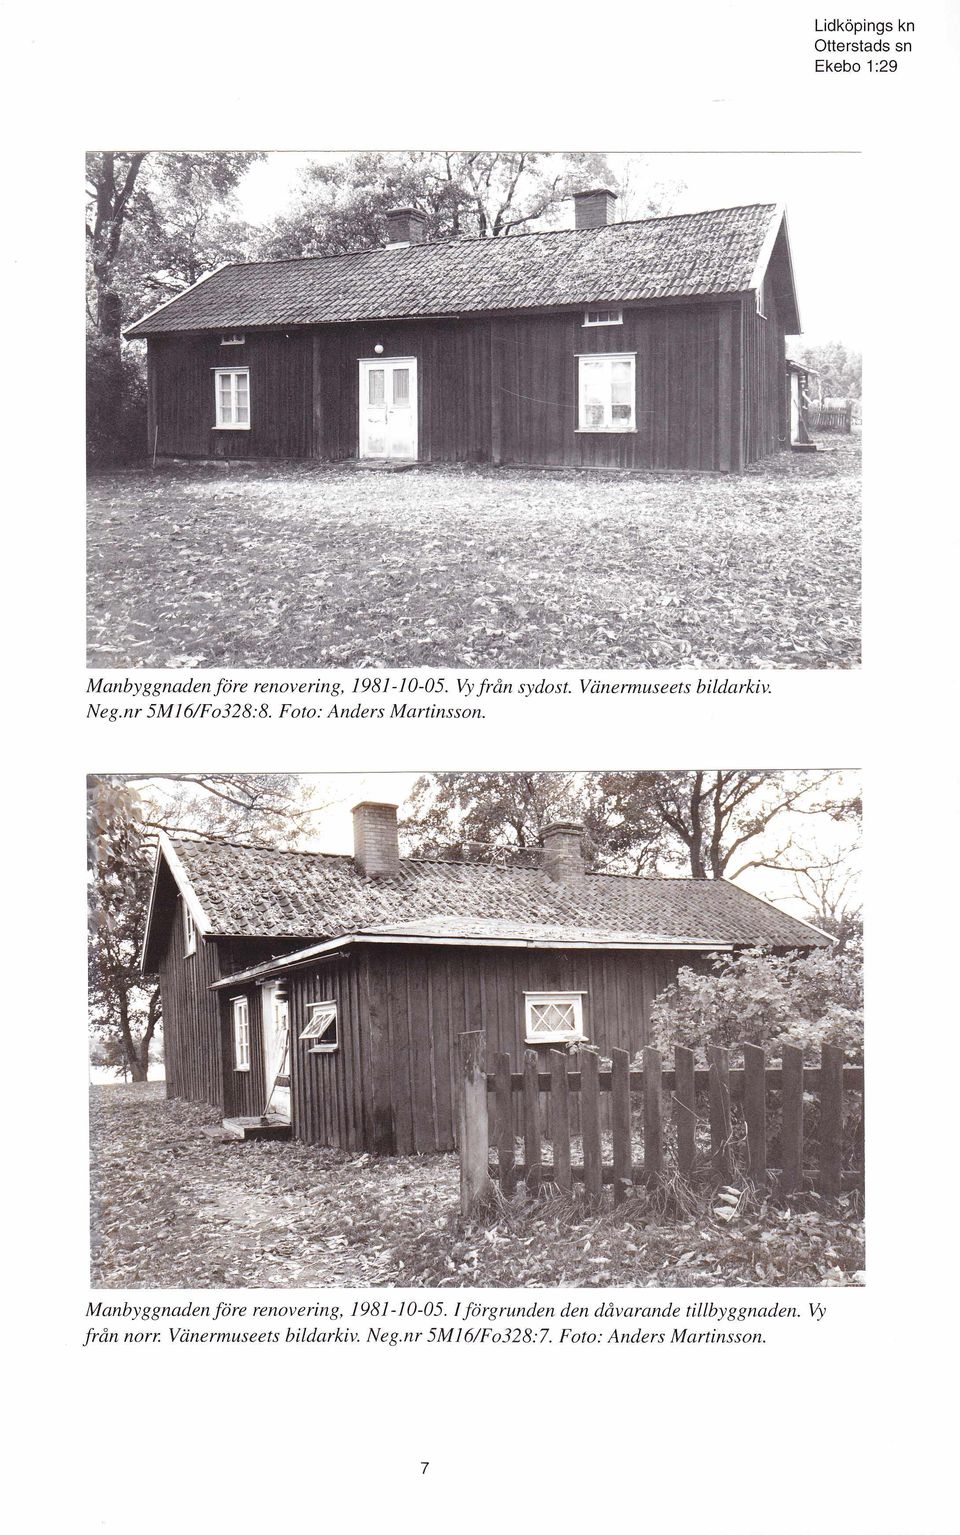 Manbyggnaden före renovering, 1981-10-05.